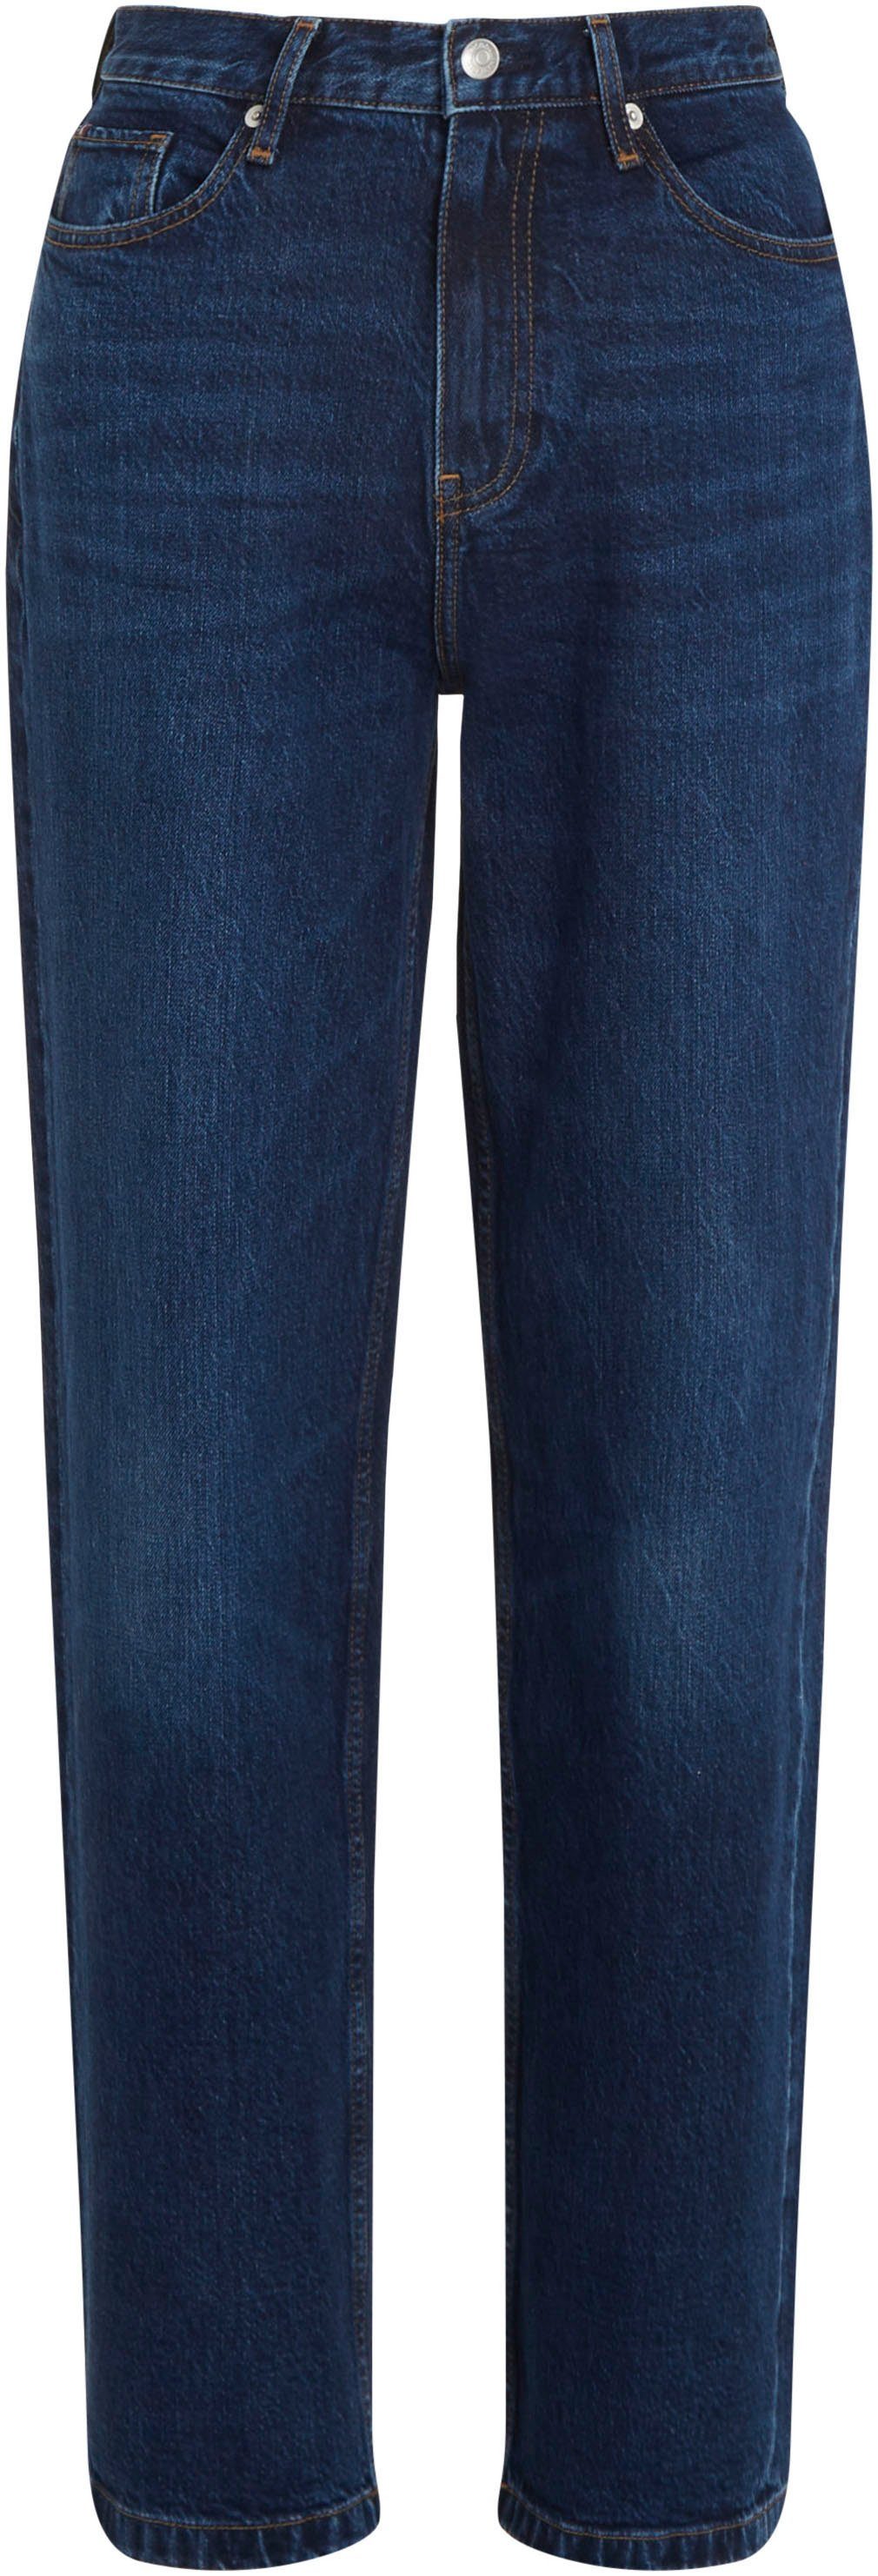 TOMMY JEANS Boyfriend-Jeans für Damen online kaufen | OTTO